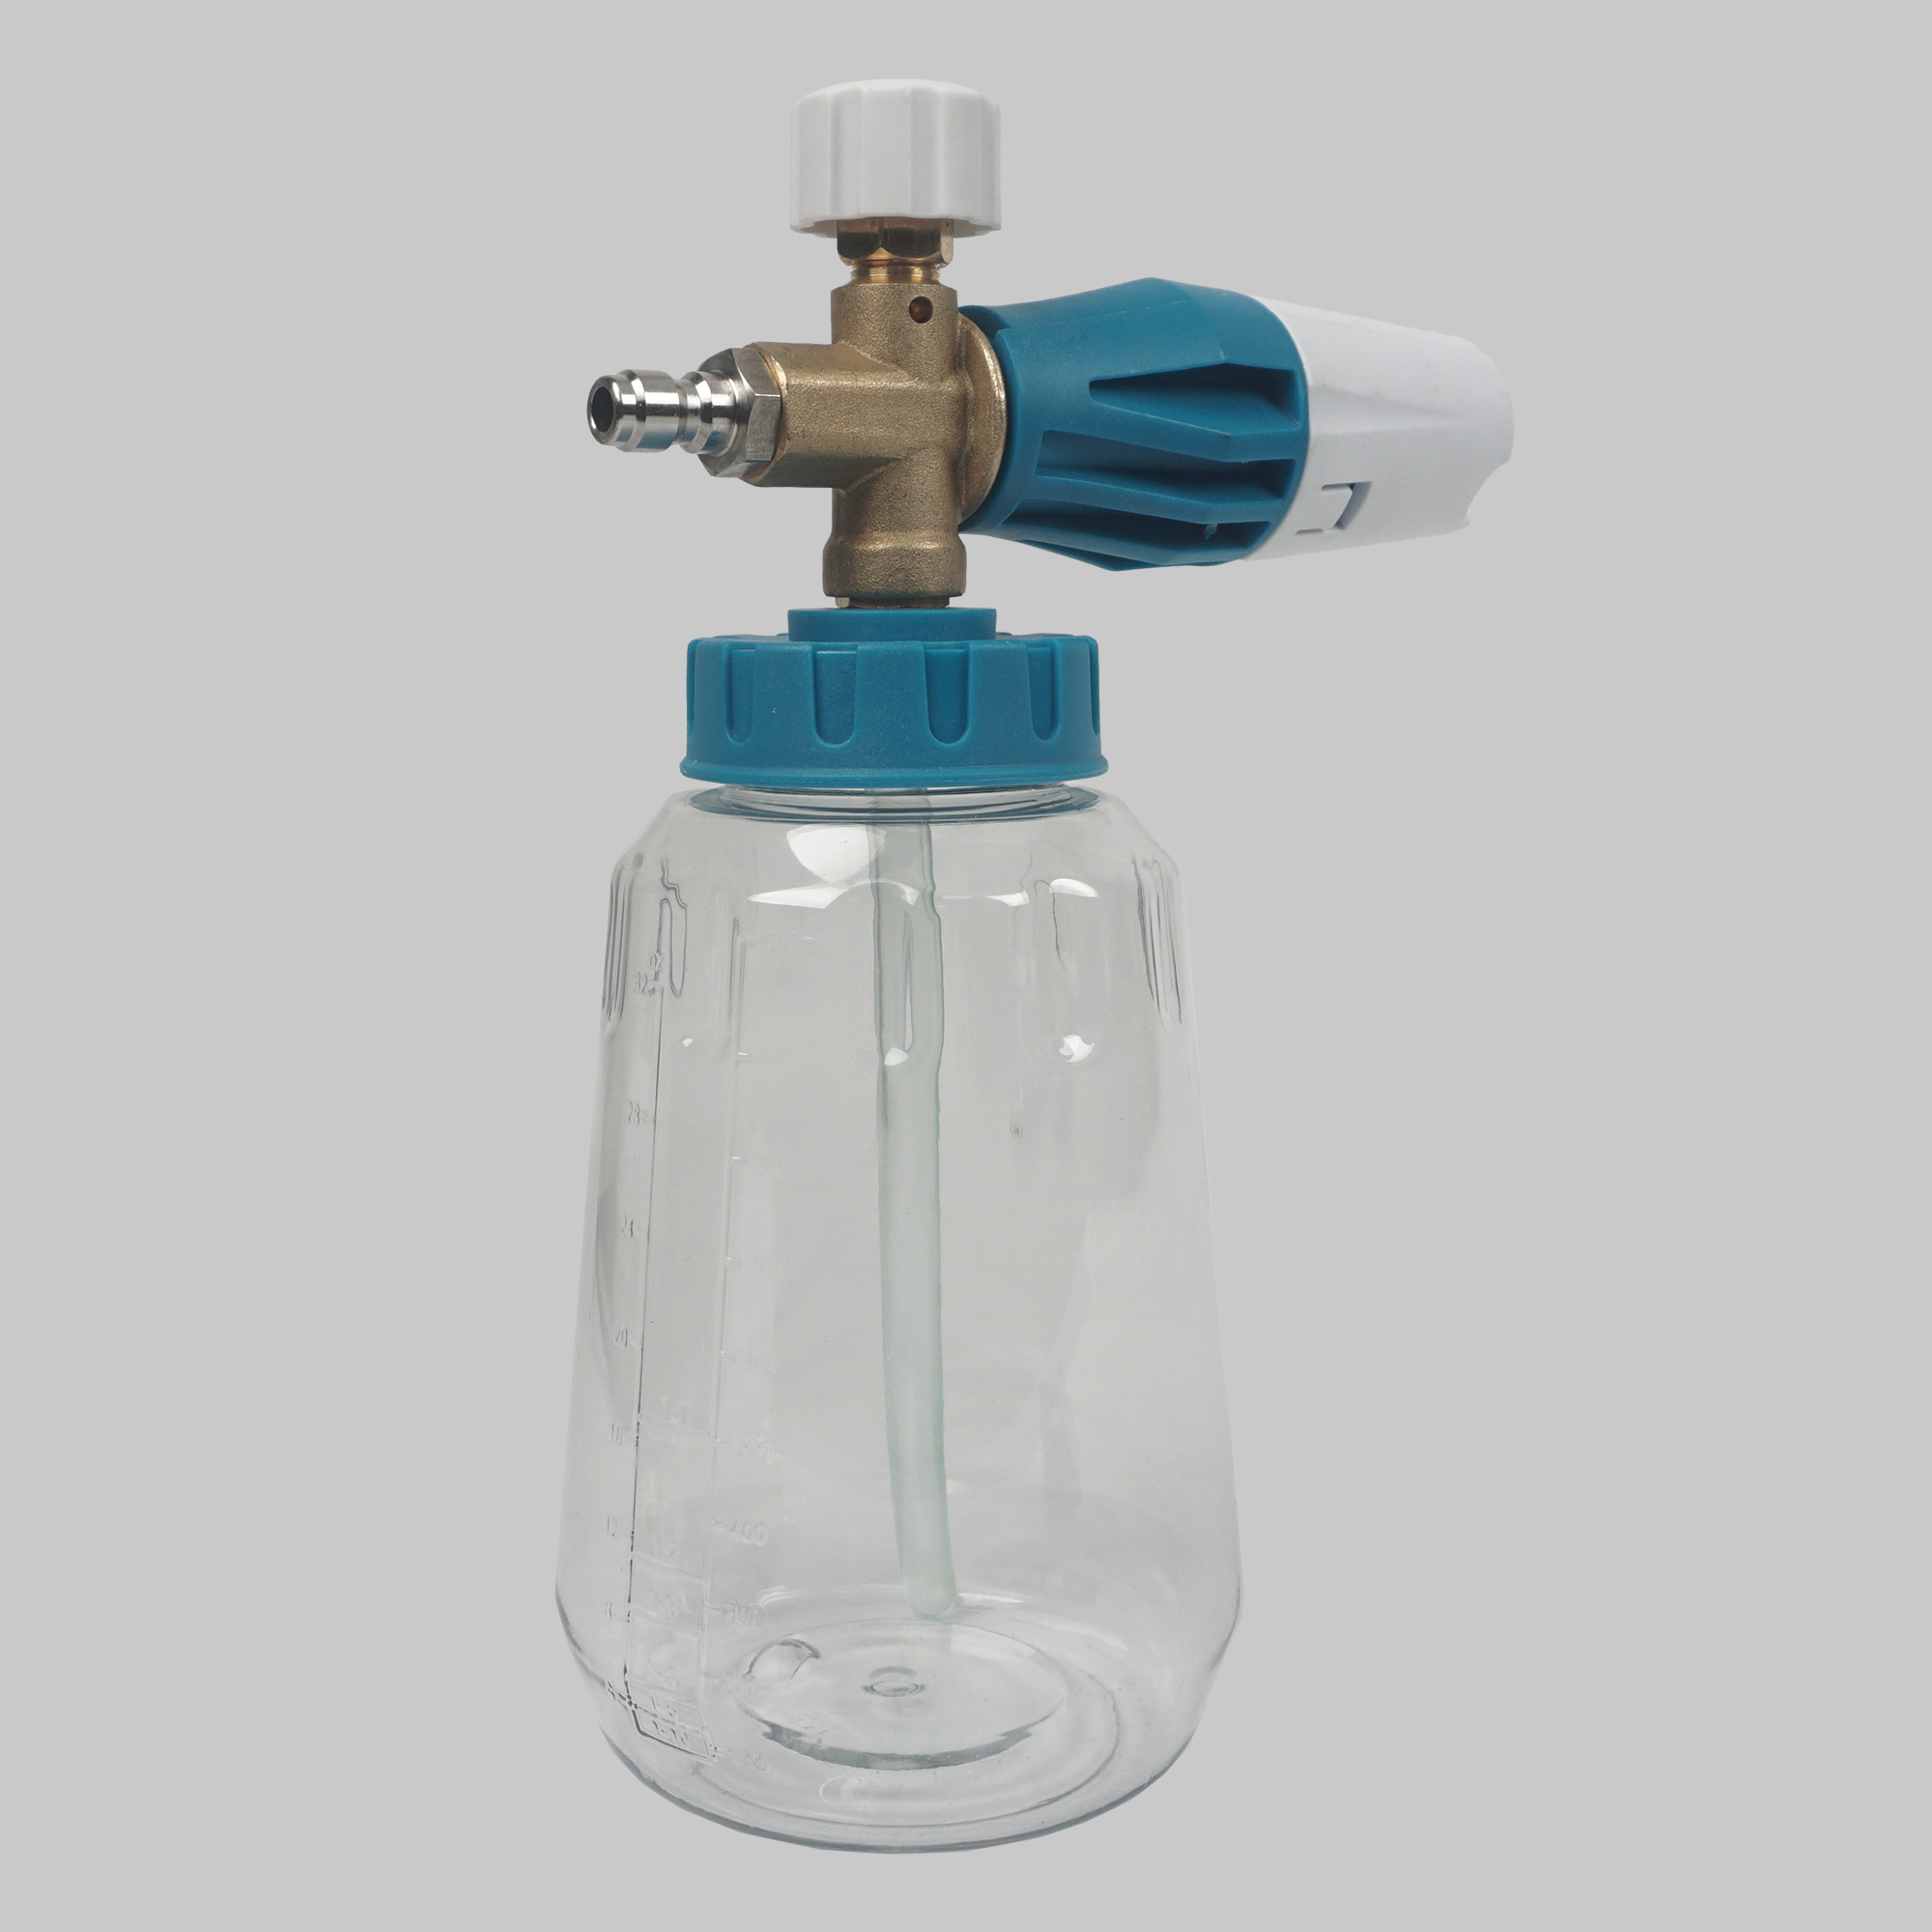 Hochdruck Wasser Luxzenschaum Lanze Schneeschaum Waschmaschine mit 1/4 '' Nilfisk schneller Stecker